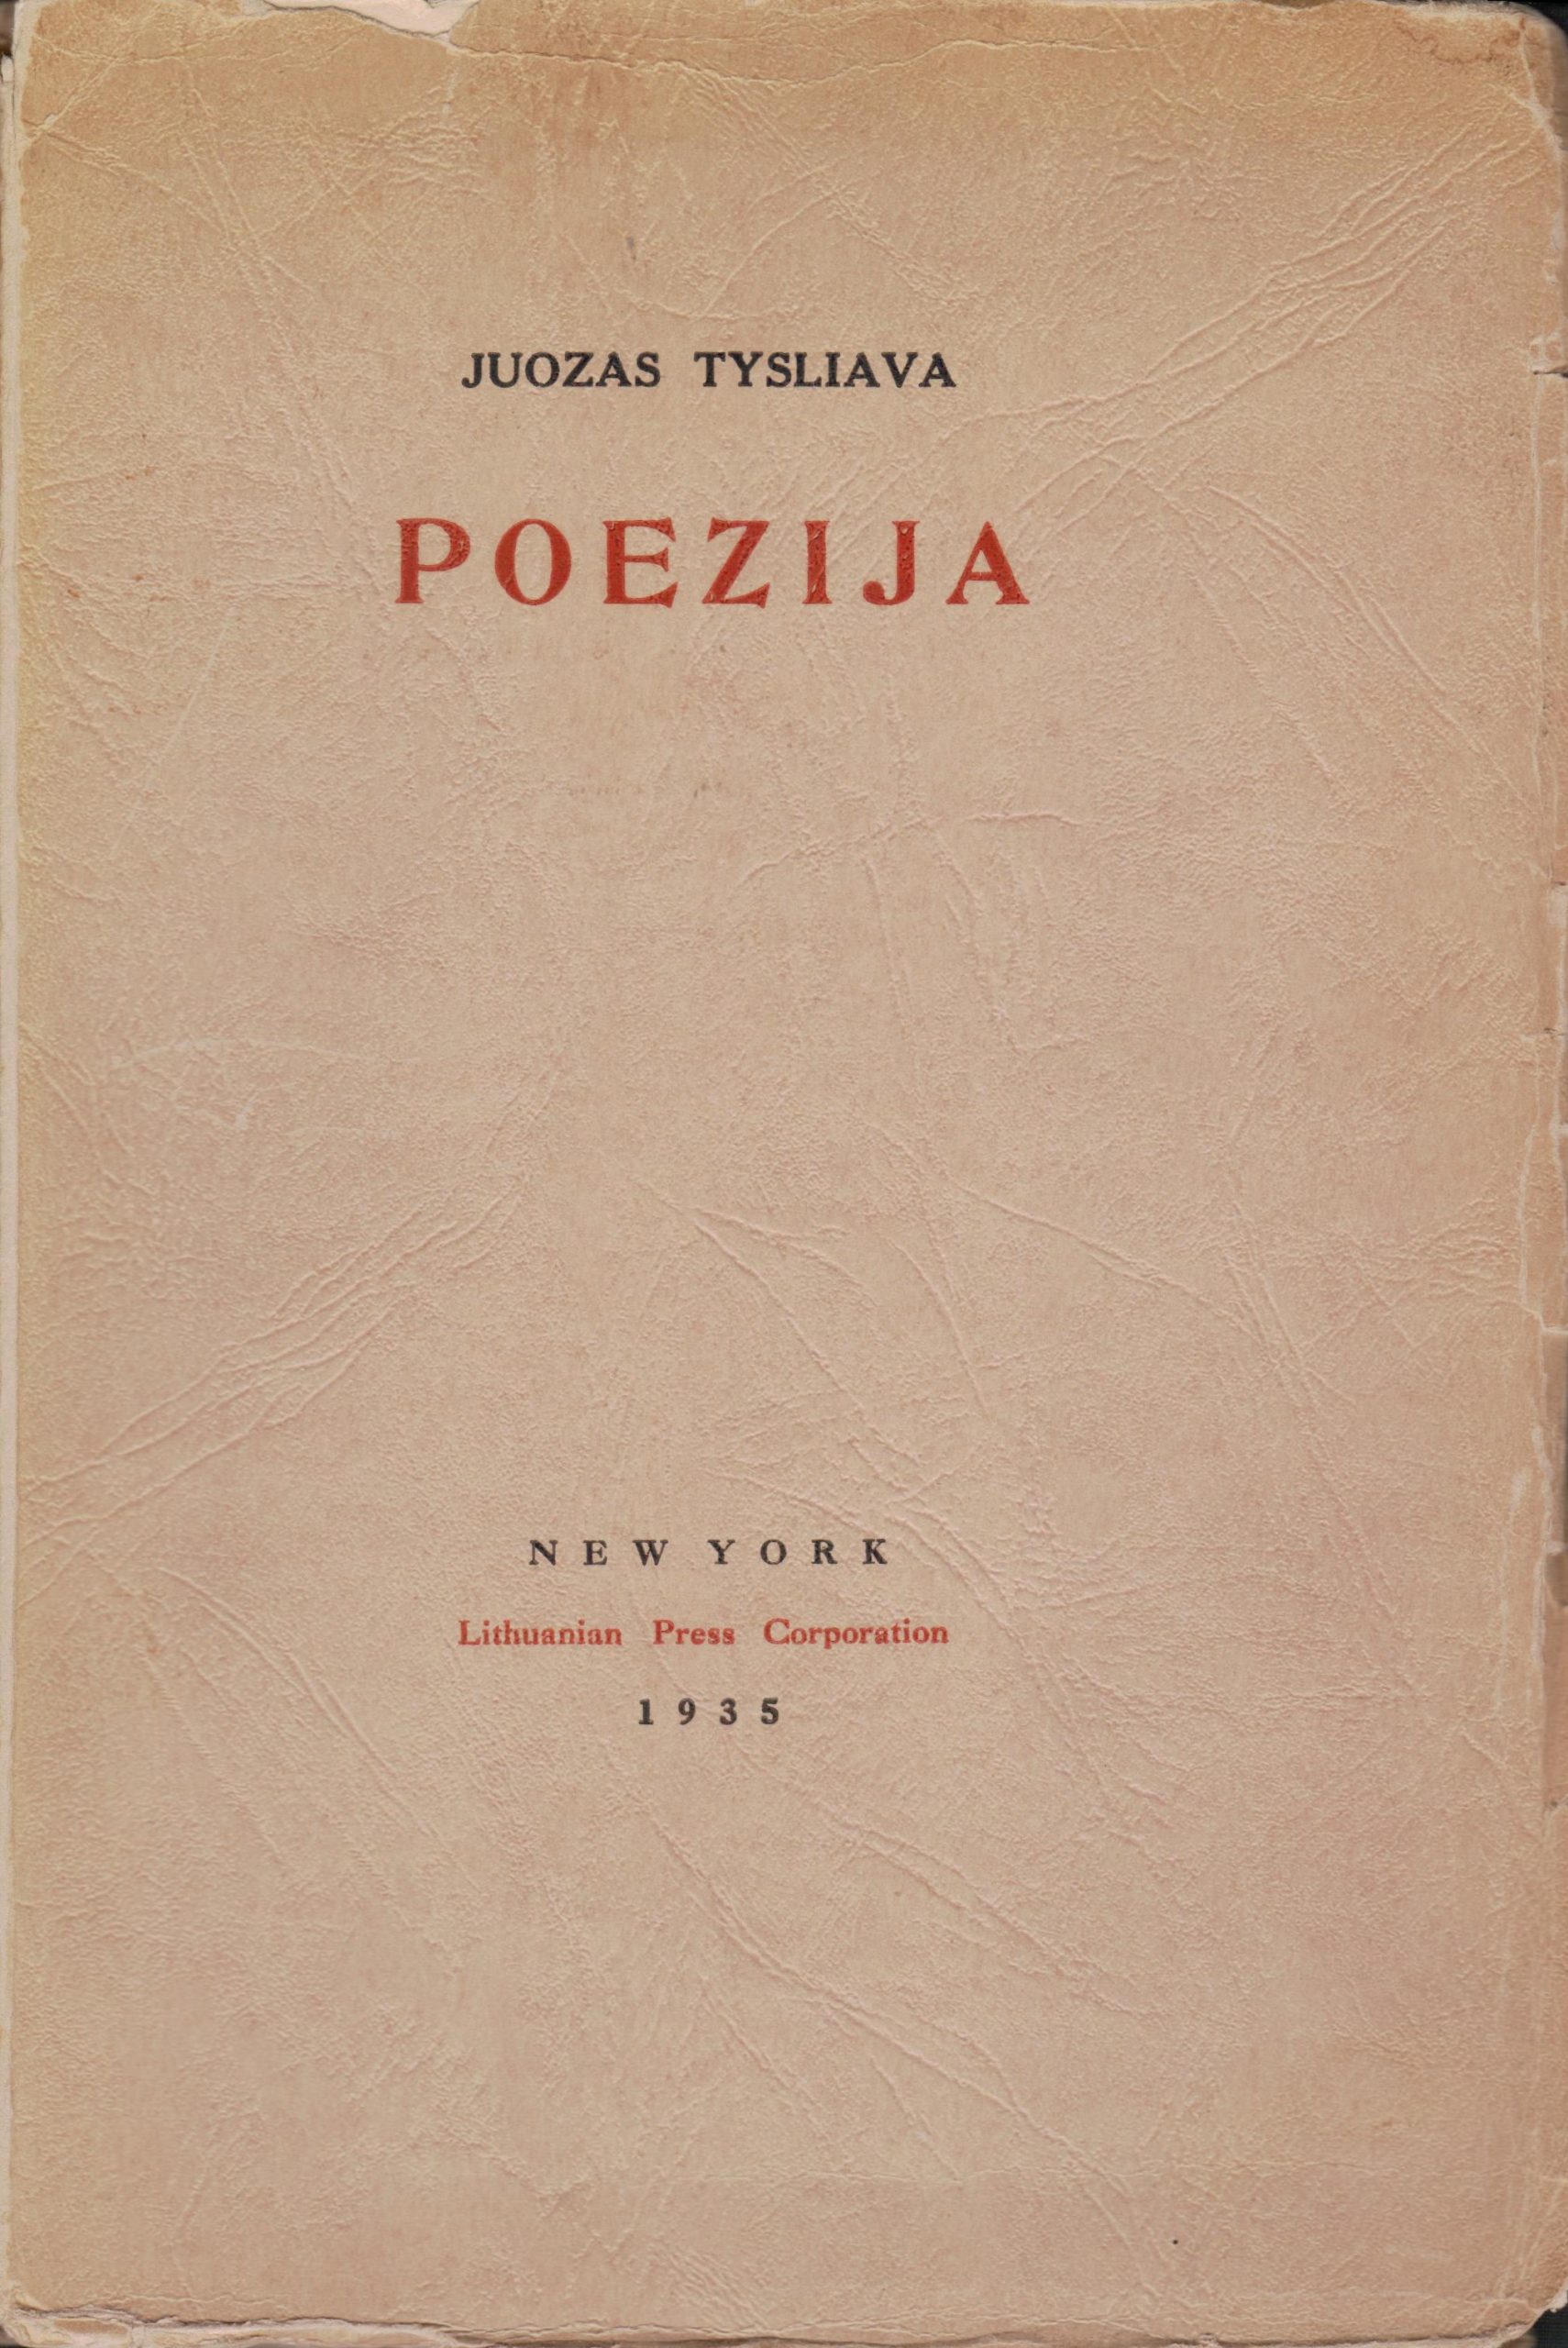 J. Tysliava. Poezija. Niujorkas. 1935 m. MLLM 32910